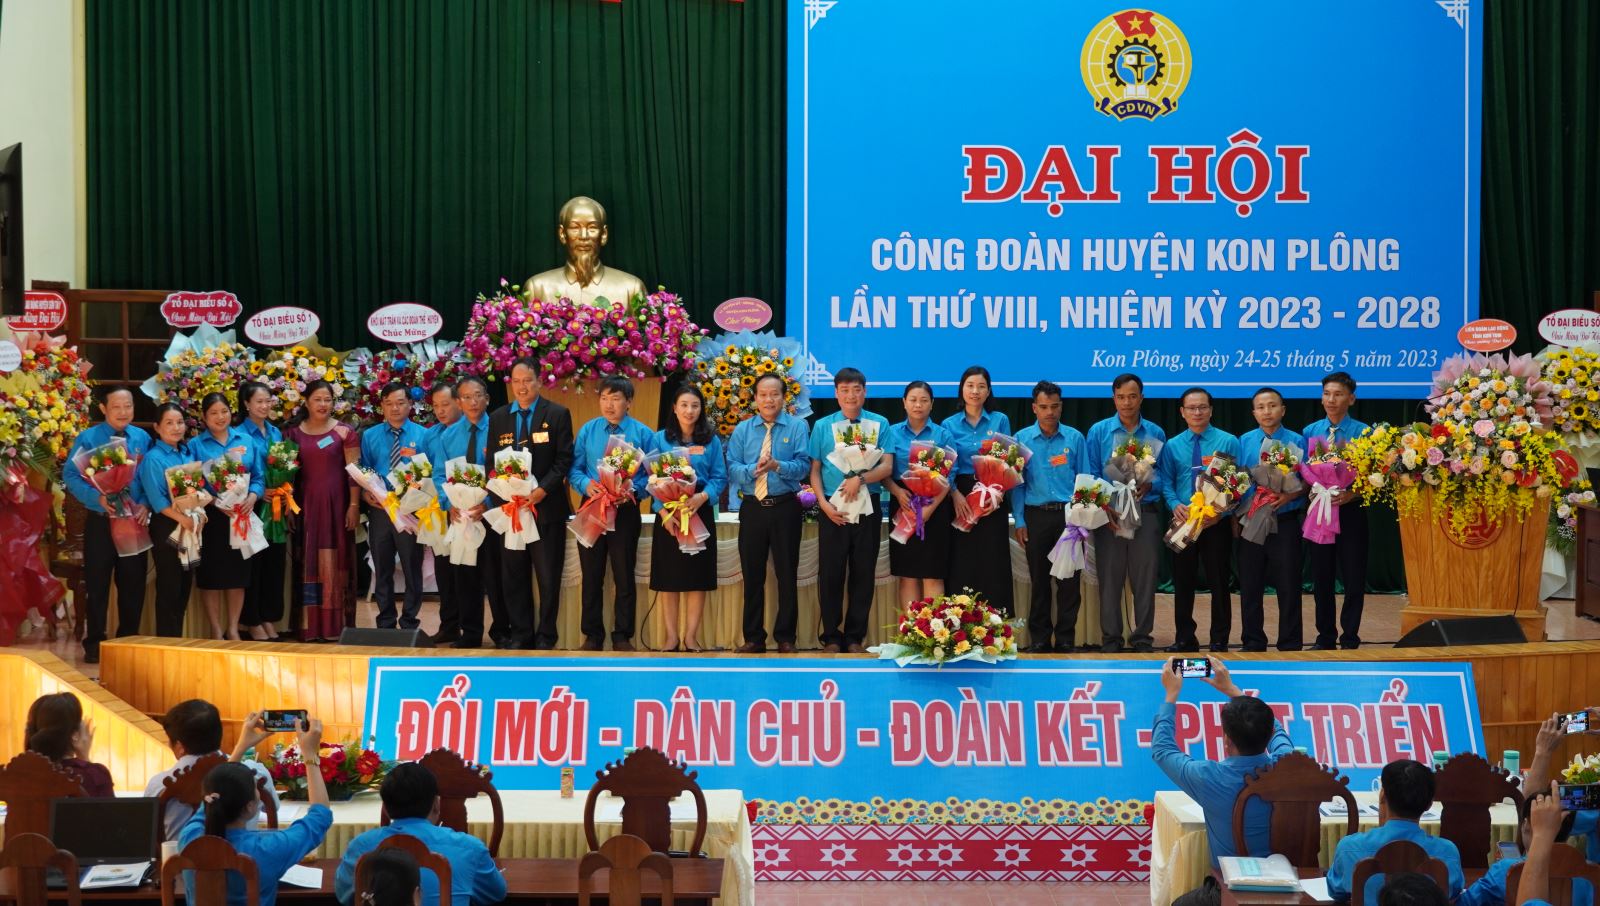 Đại hội Công đoàn huyện Kon Plông khóa VIII, nhiệm kỳ 2023 - 2028